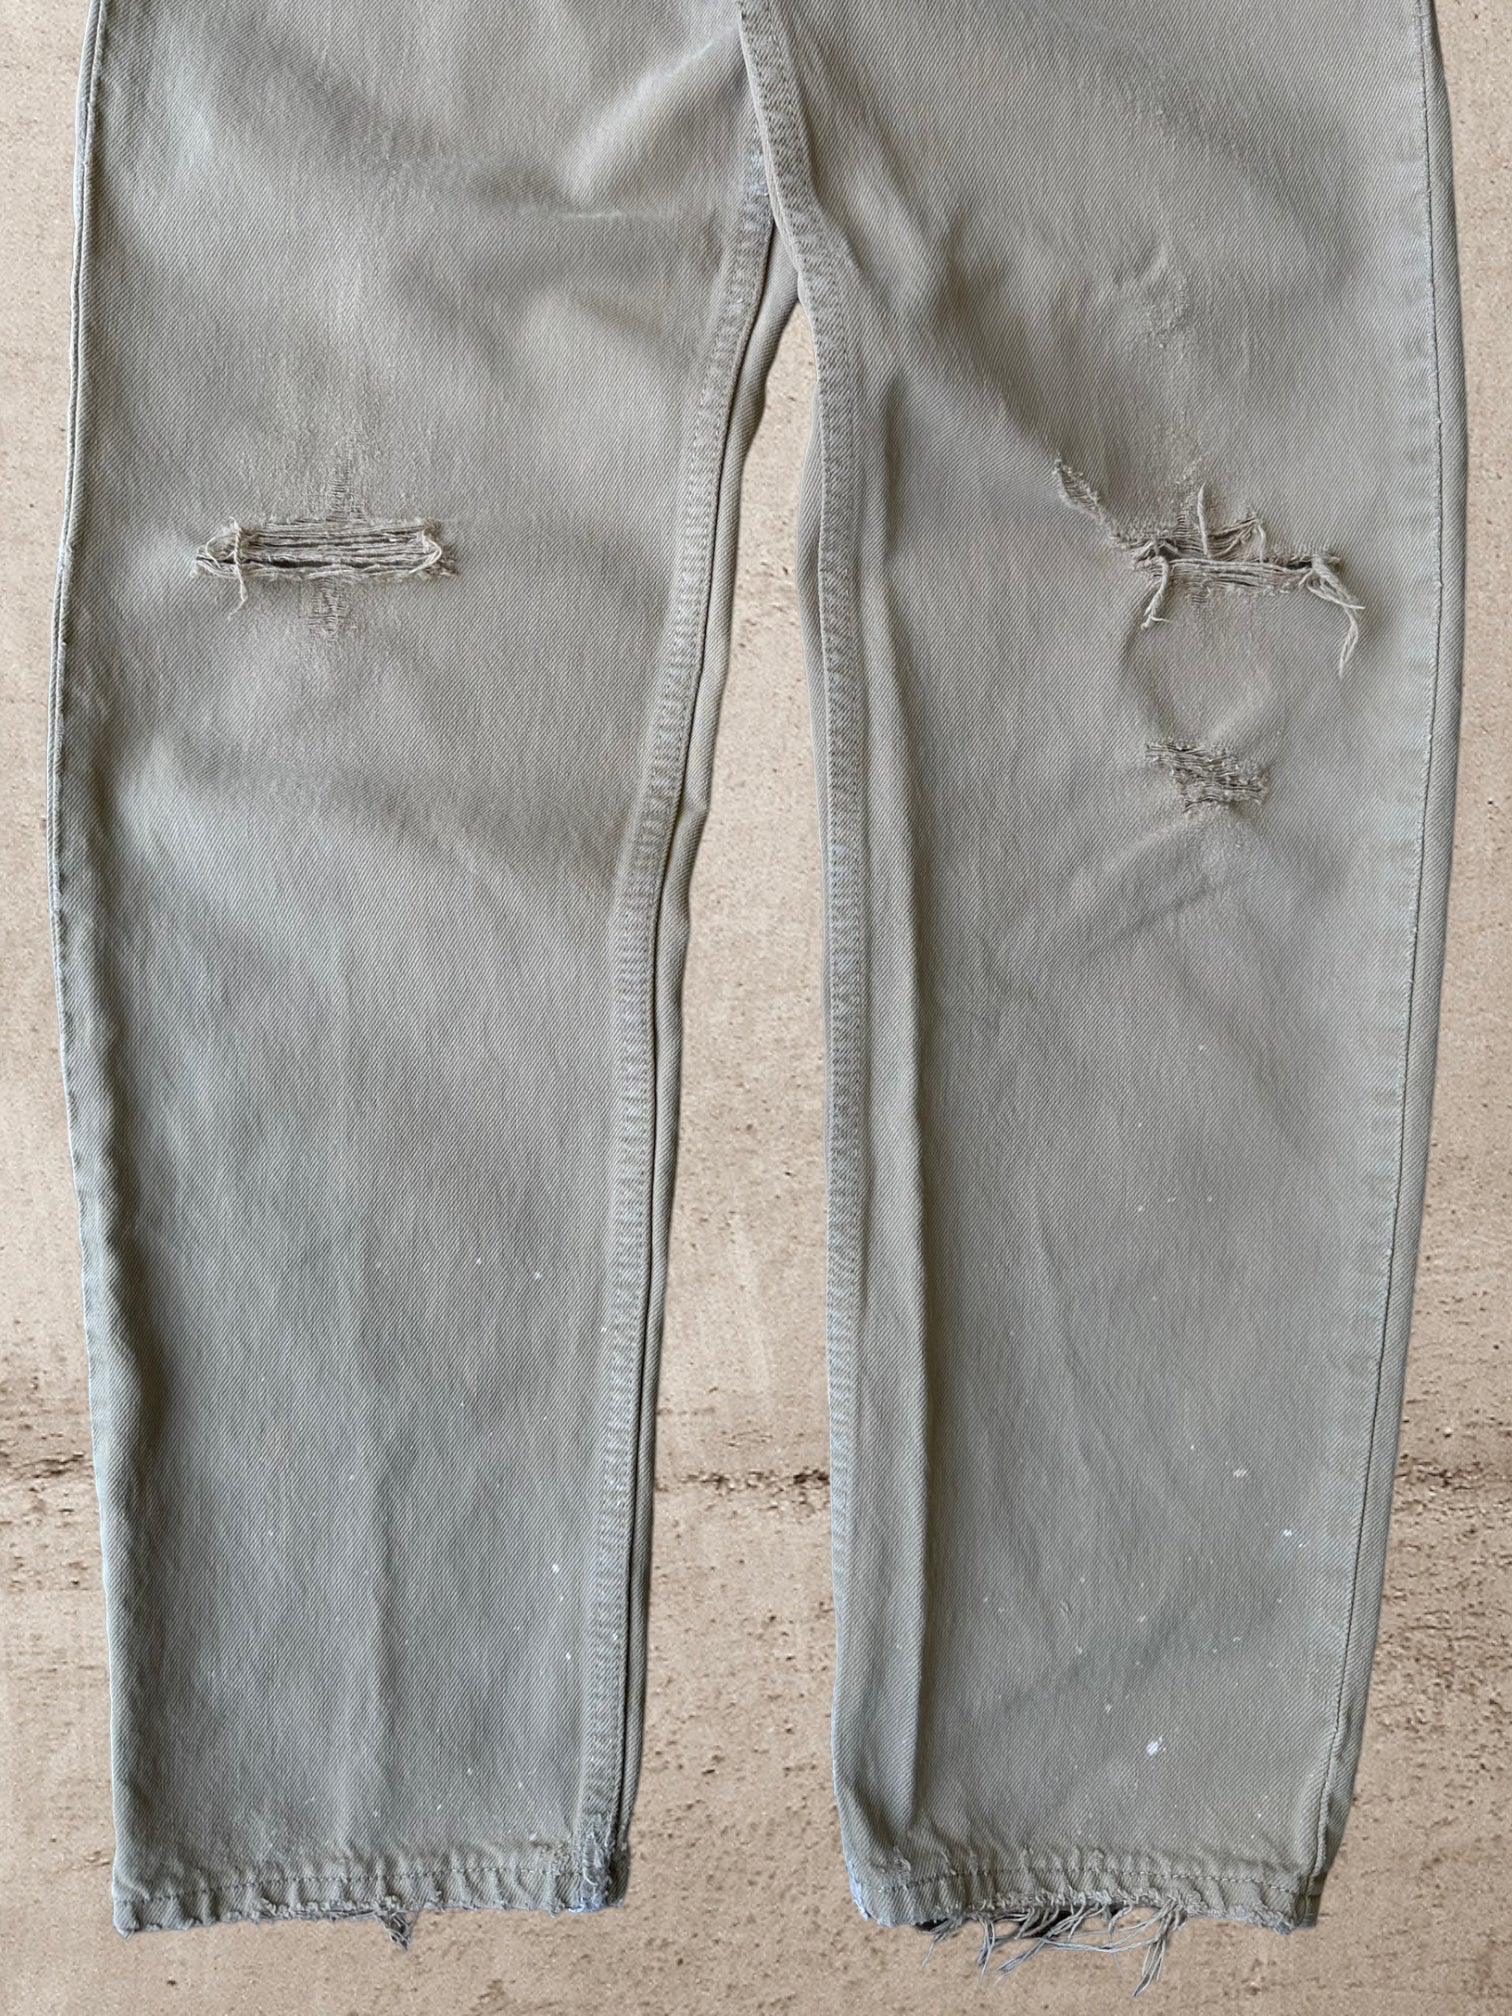 Vintage Levi 550 Tan Jeans - 30x31